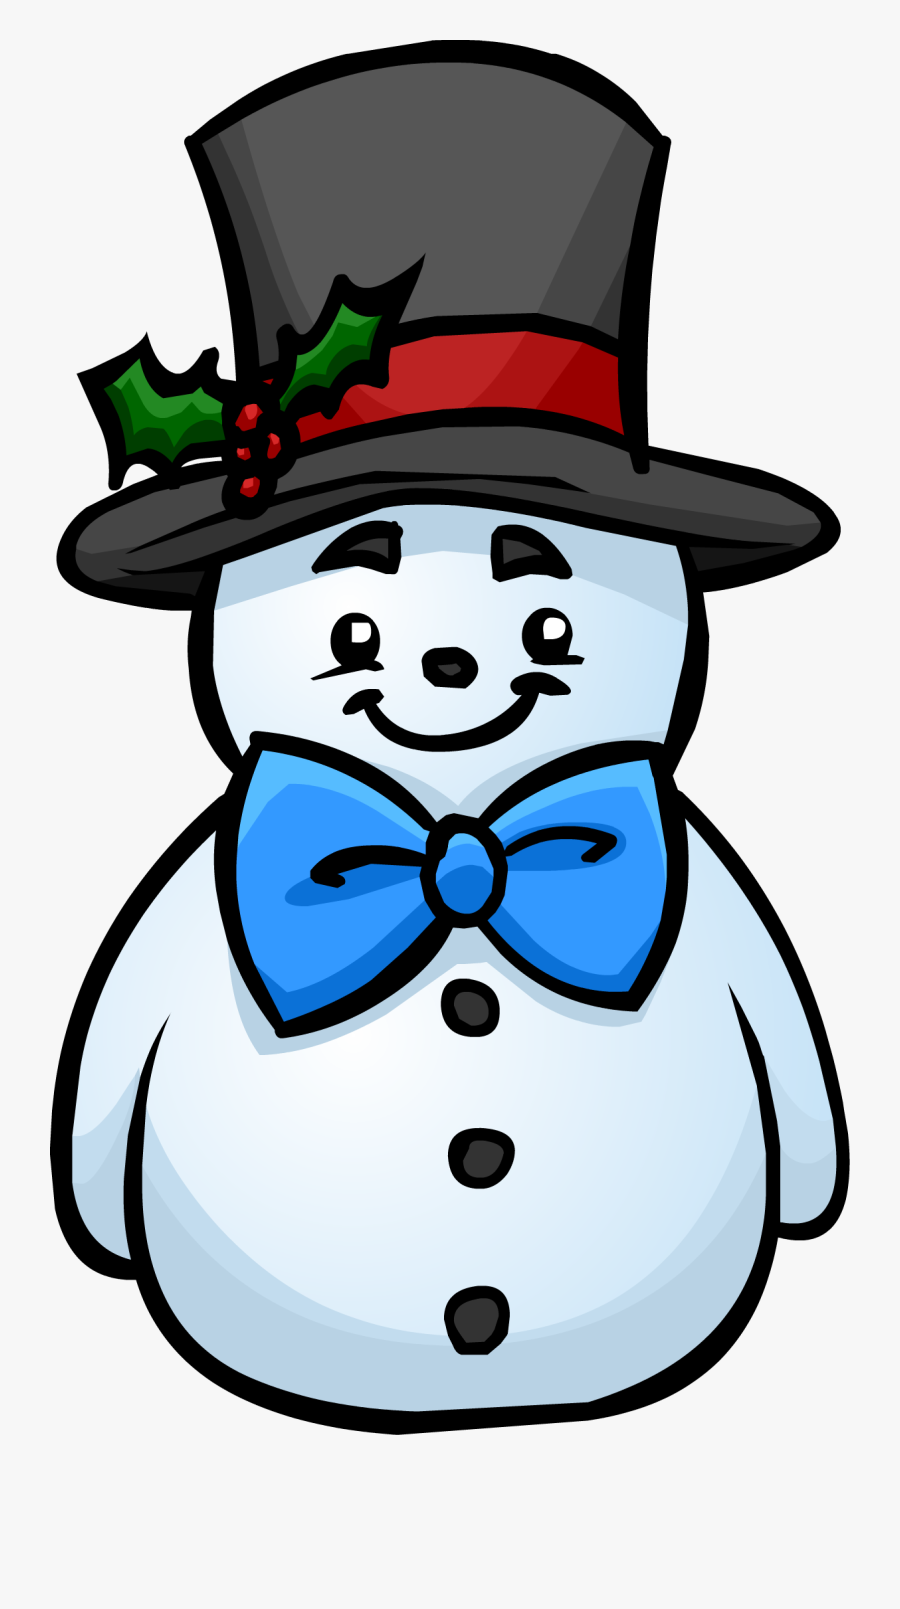 Top Hat Snowman - Top Hat For A Snowman, Transparent Clipart